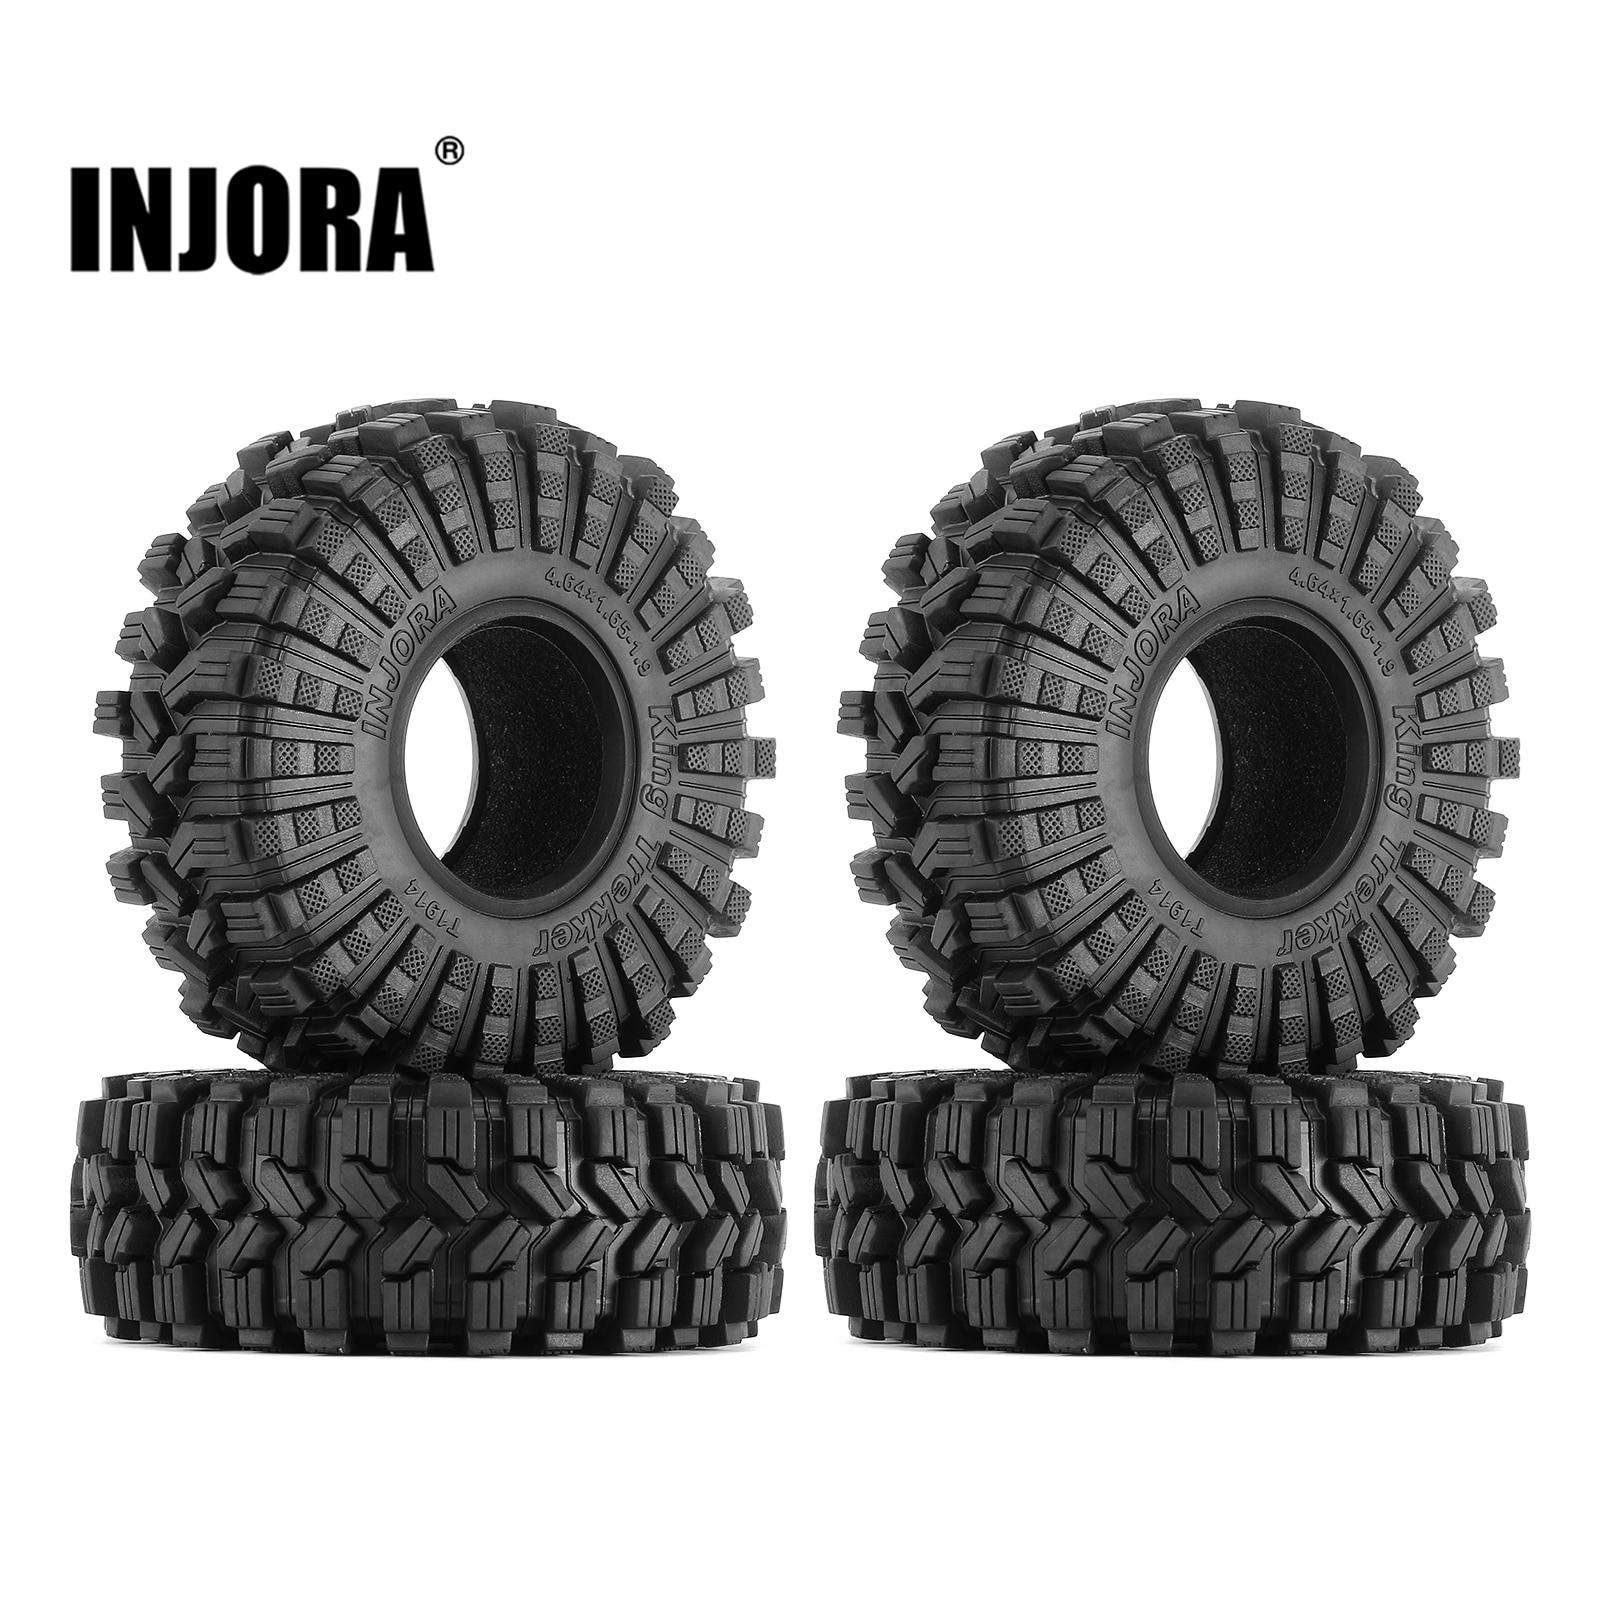 INJORA-King-Trekker-118-42mm-1-9-All-Terrain-Wheel-Tires-for-1-10-RC-Crawler.jpg